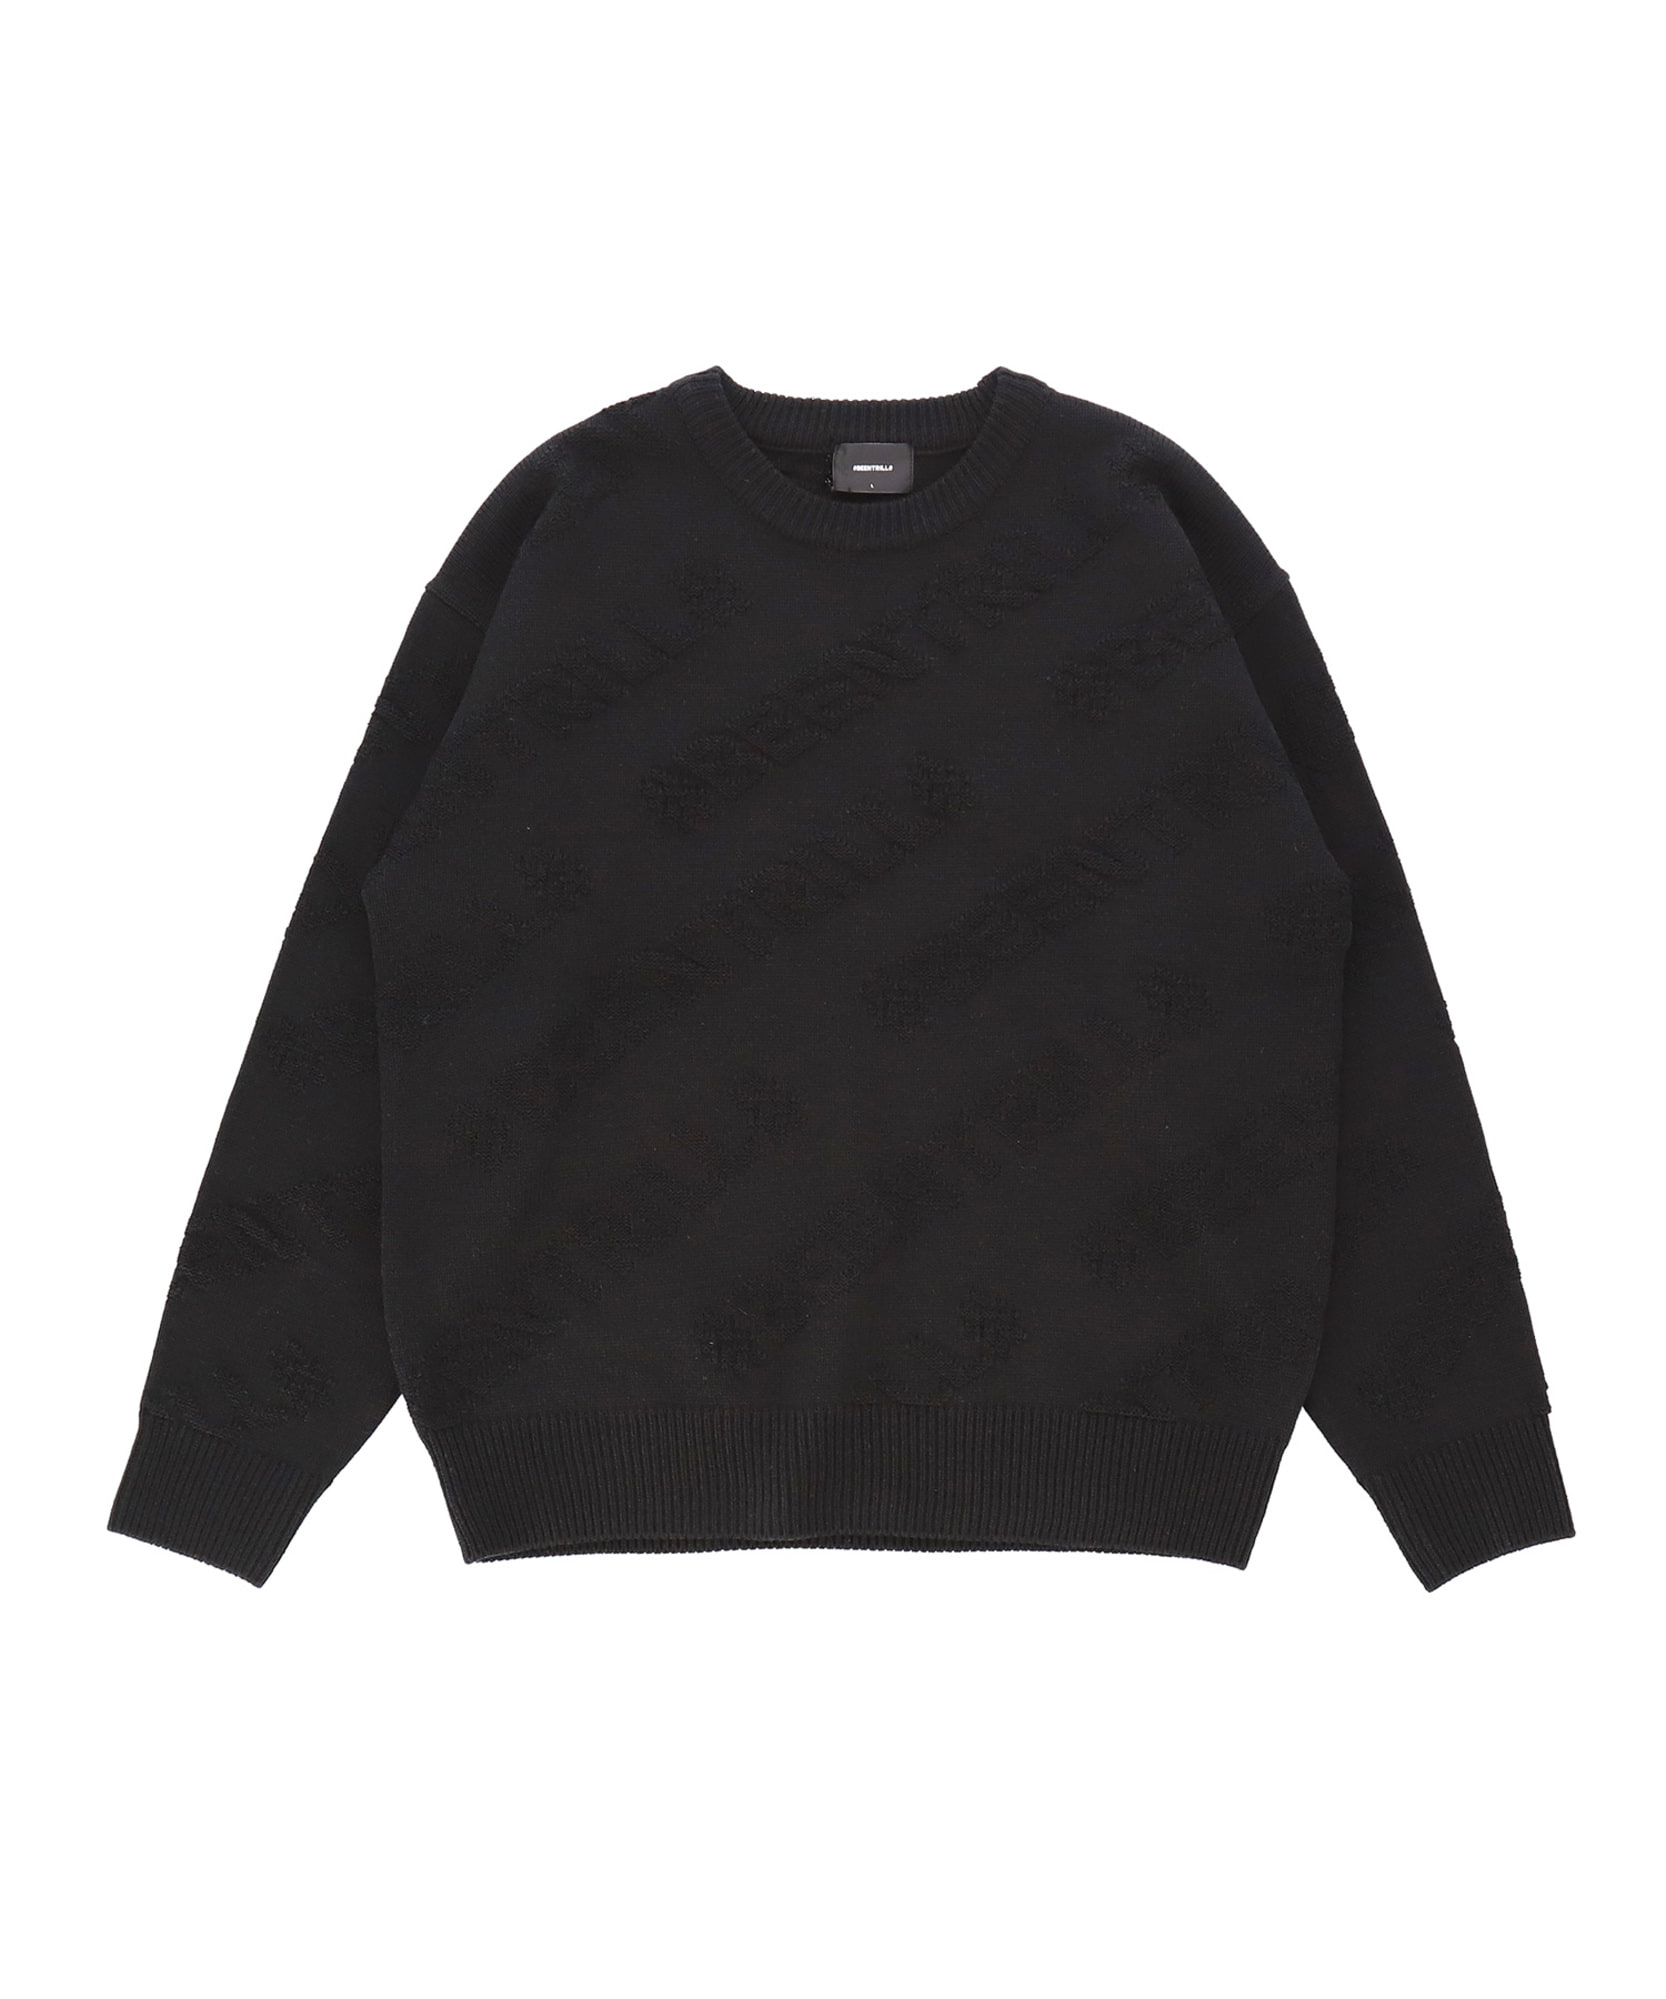 플라이트 모노그램 오버핏 스웨터(블랙)